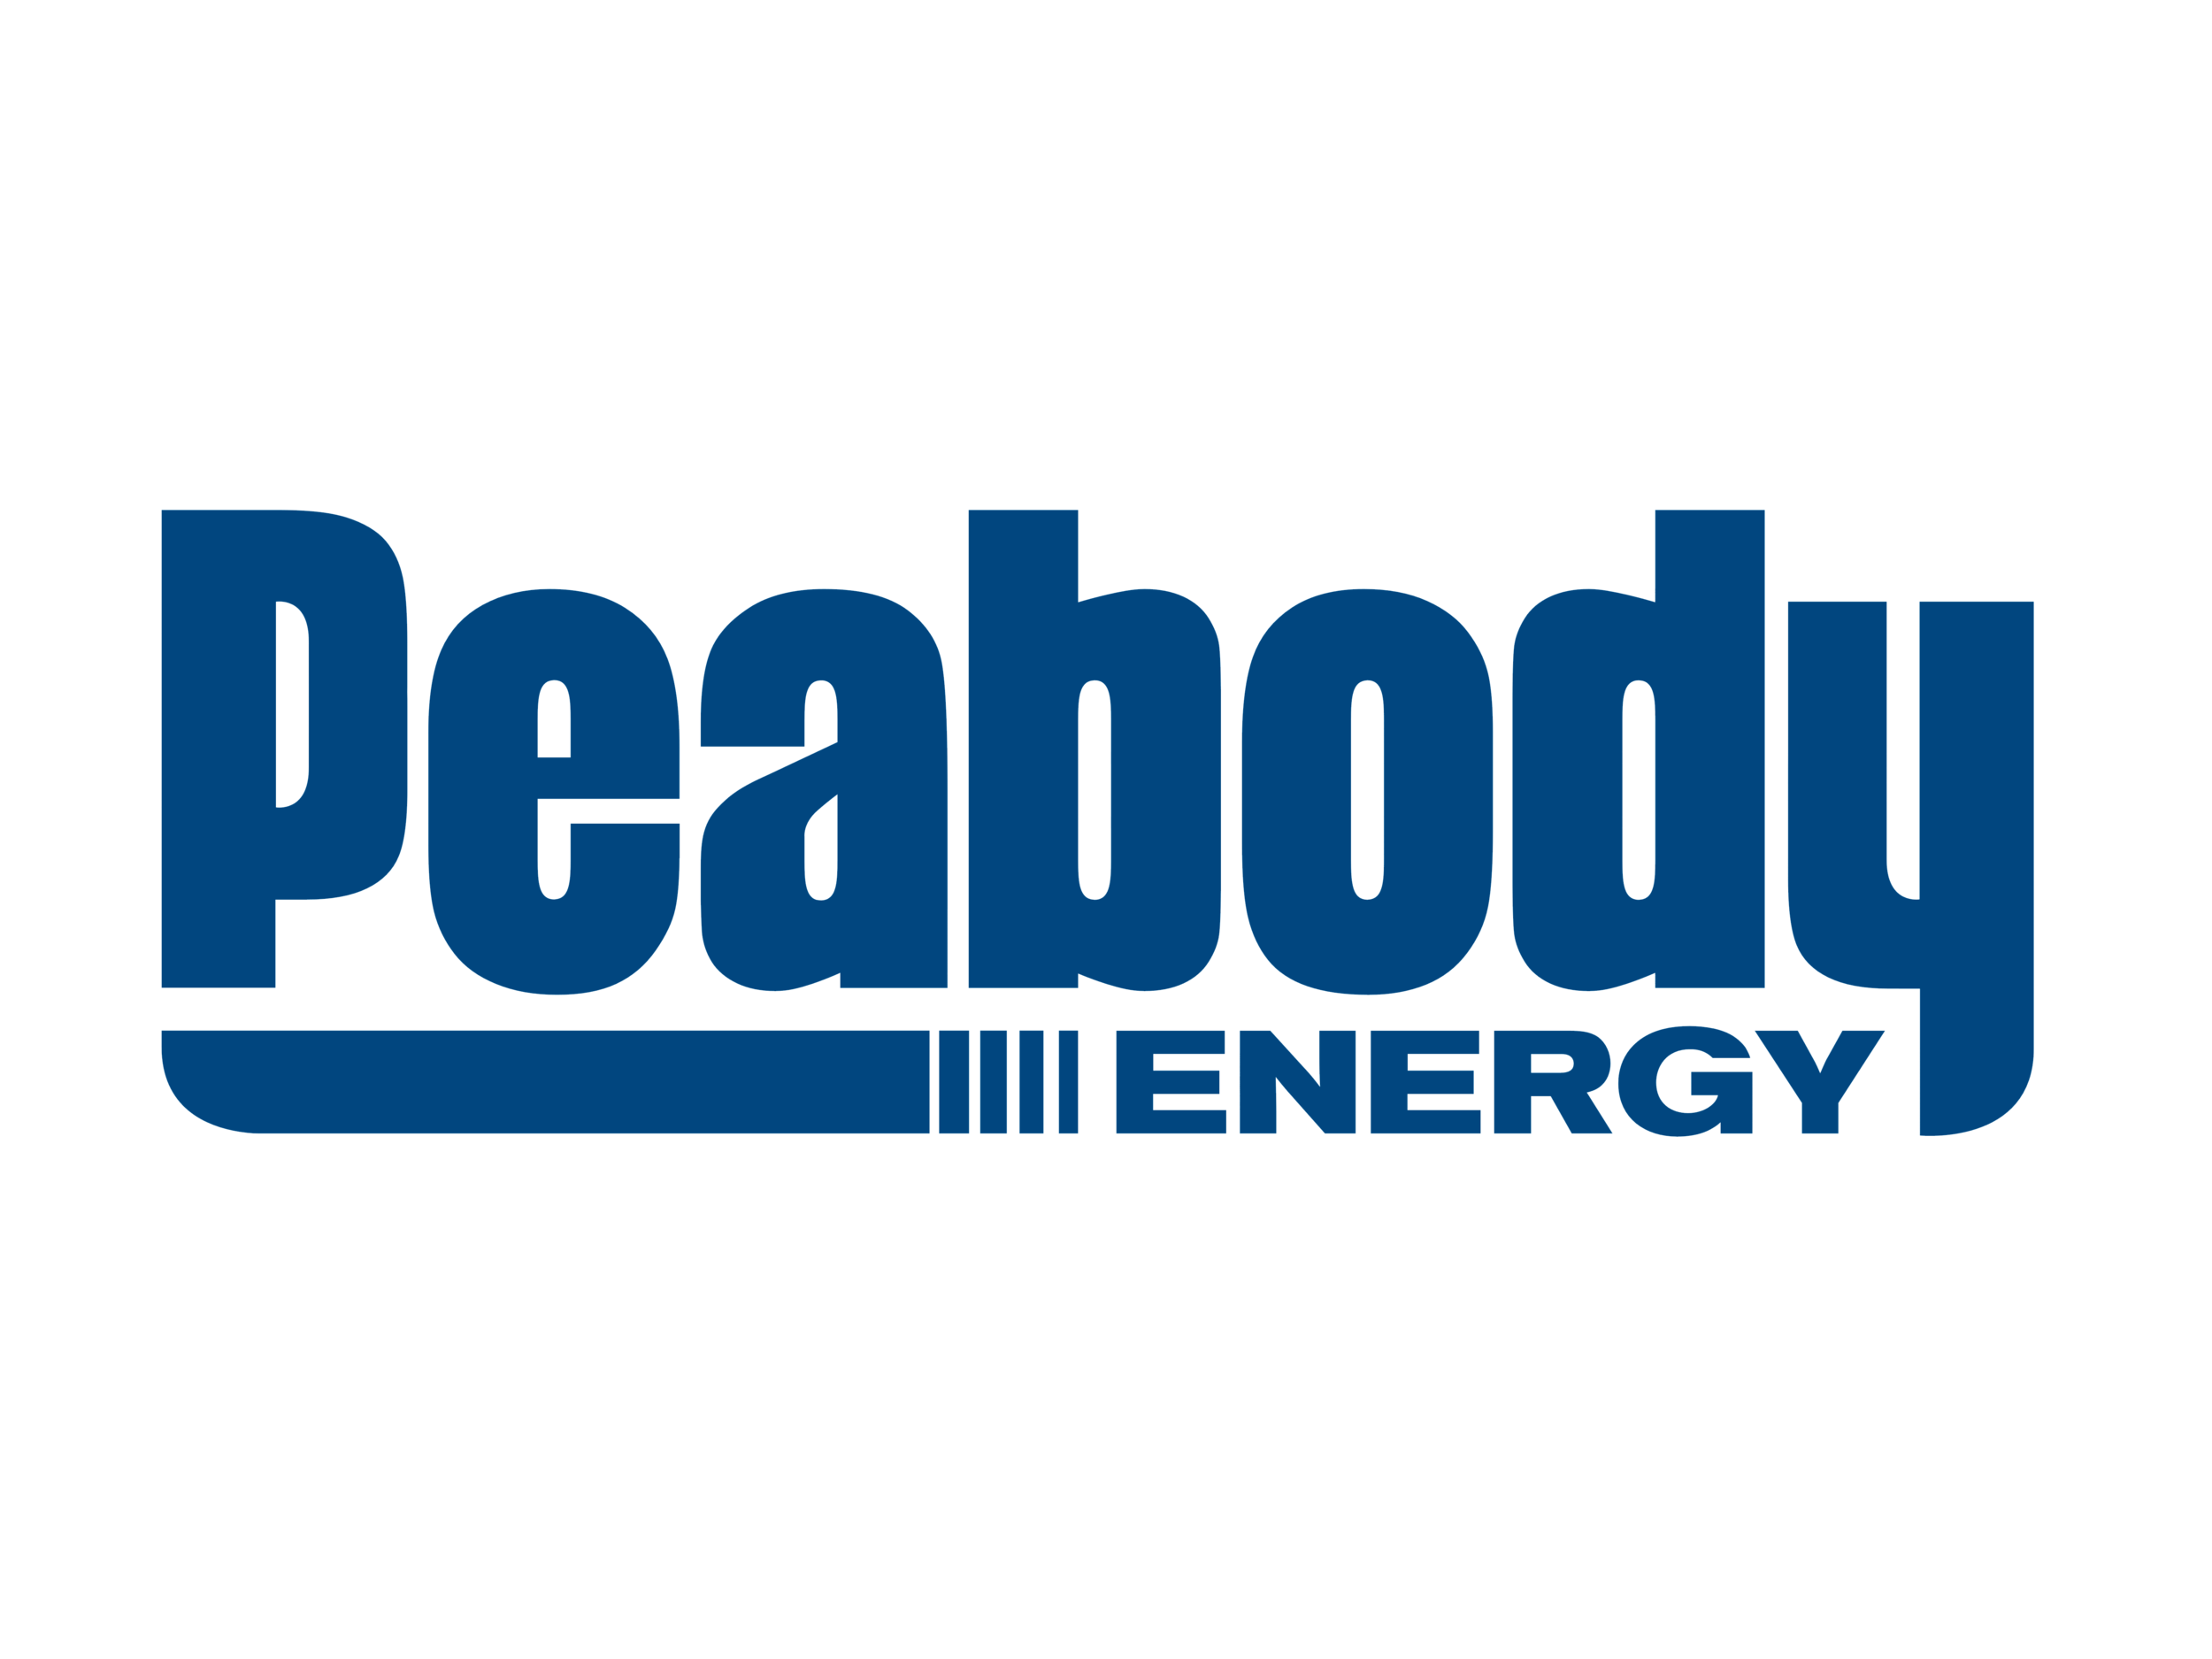 Peabody_Energy_logo_logotype.png